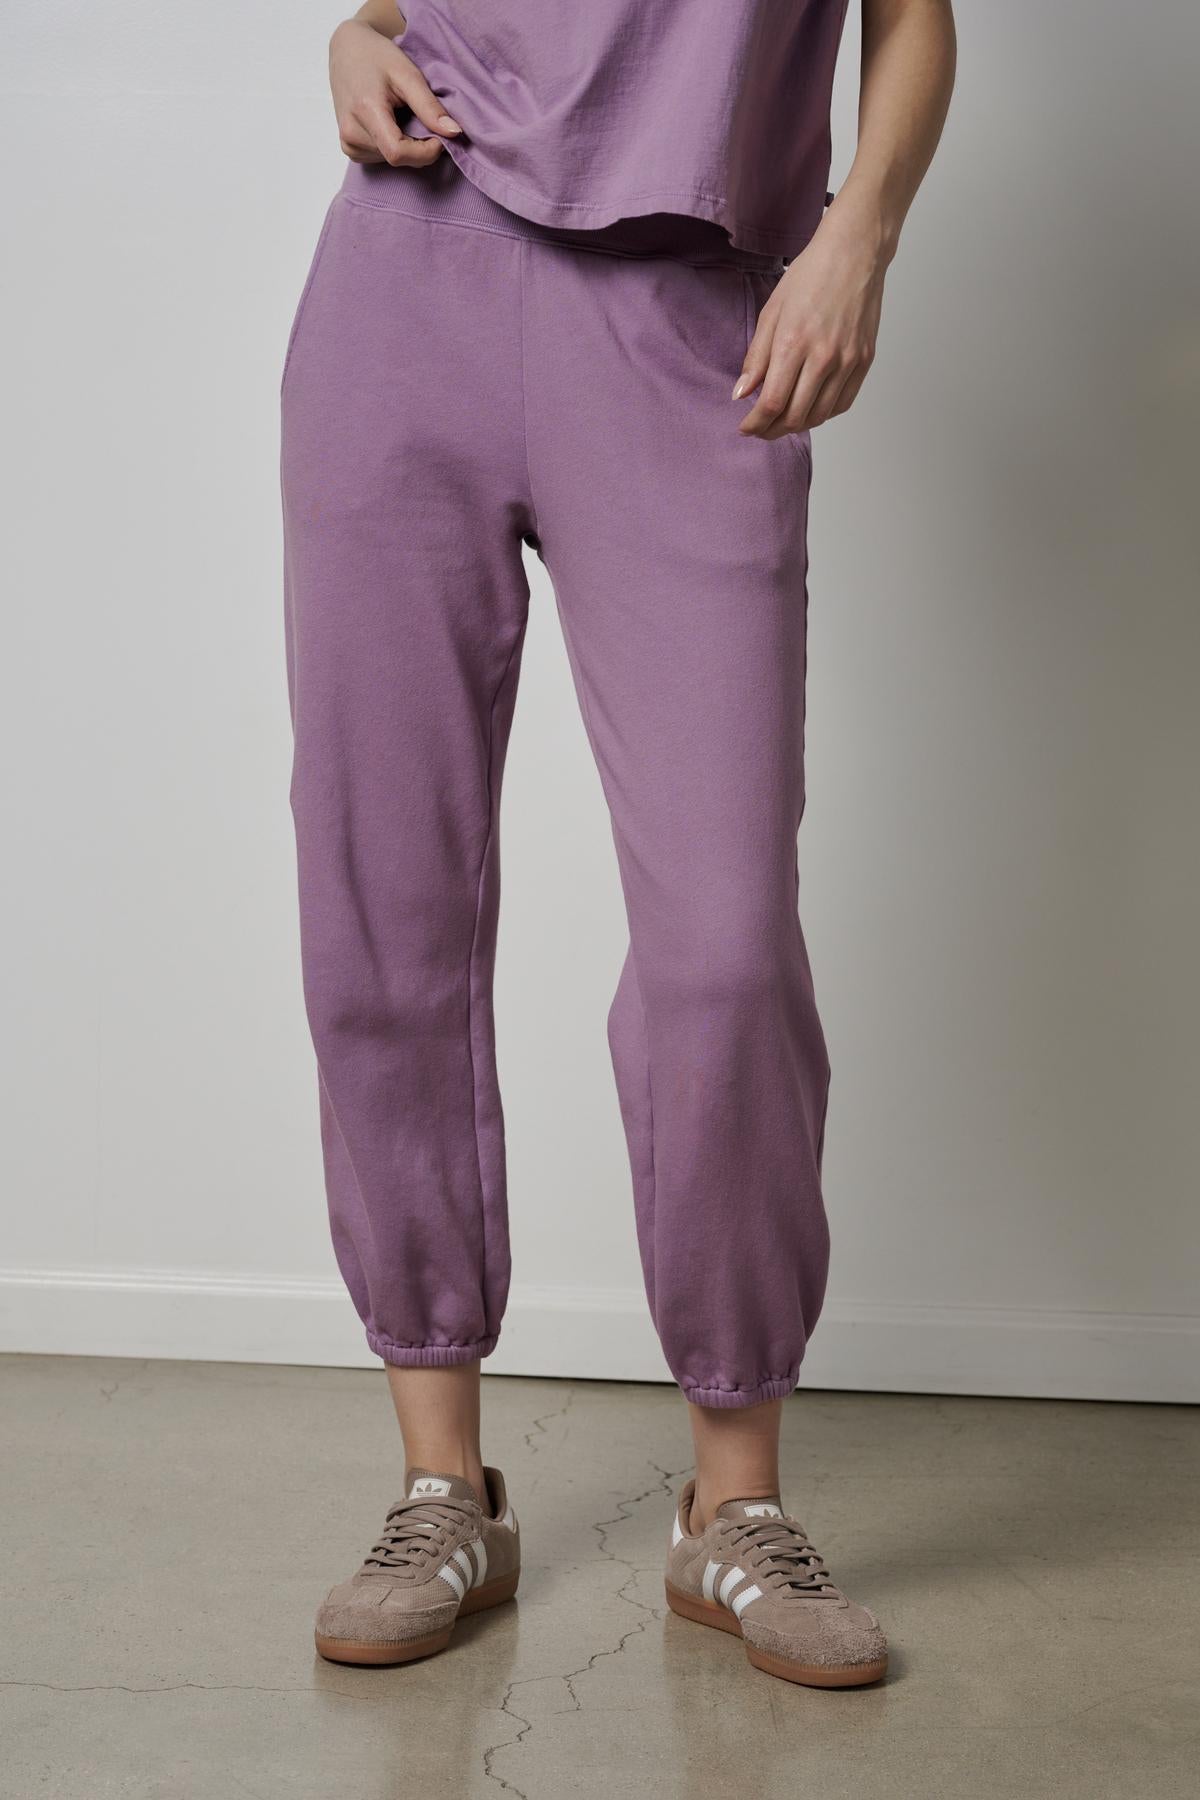 A woman wearing purple ZUMA sweatpants and sneakers.-26827763581121